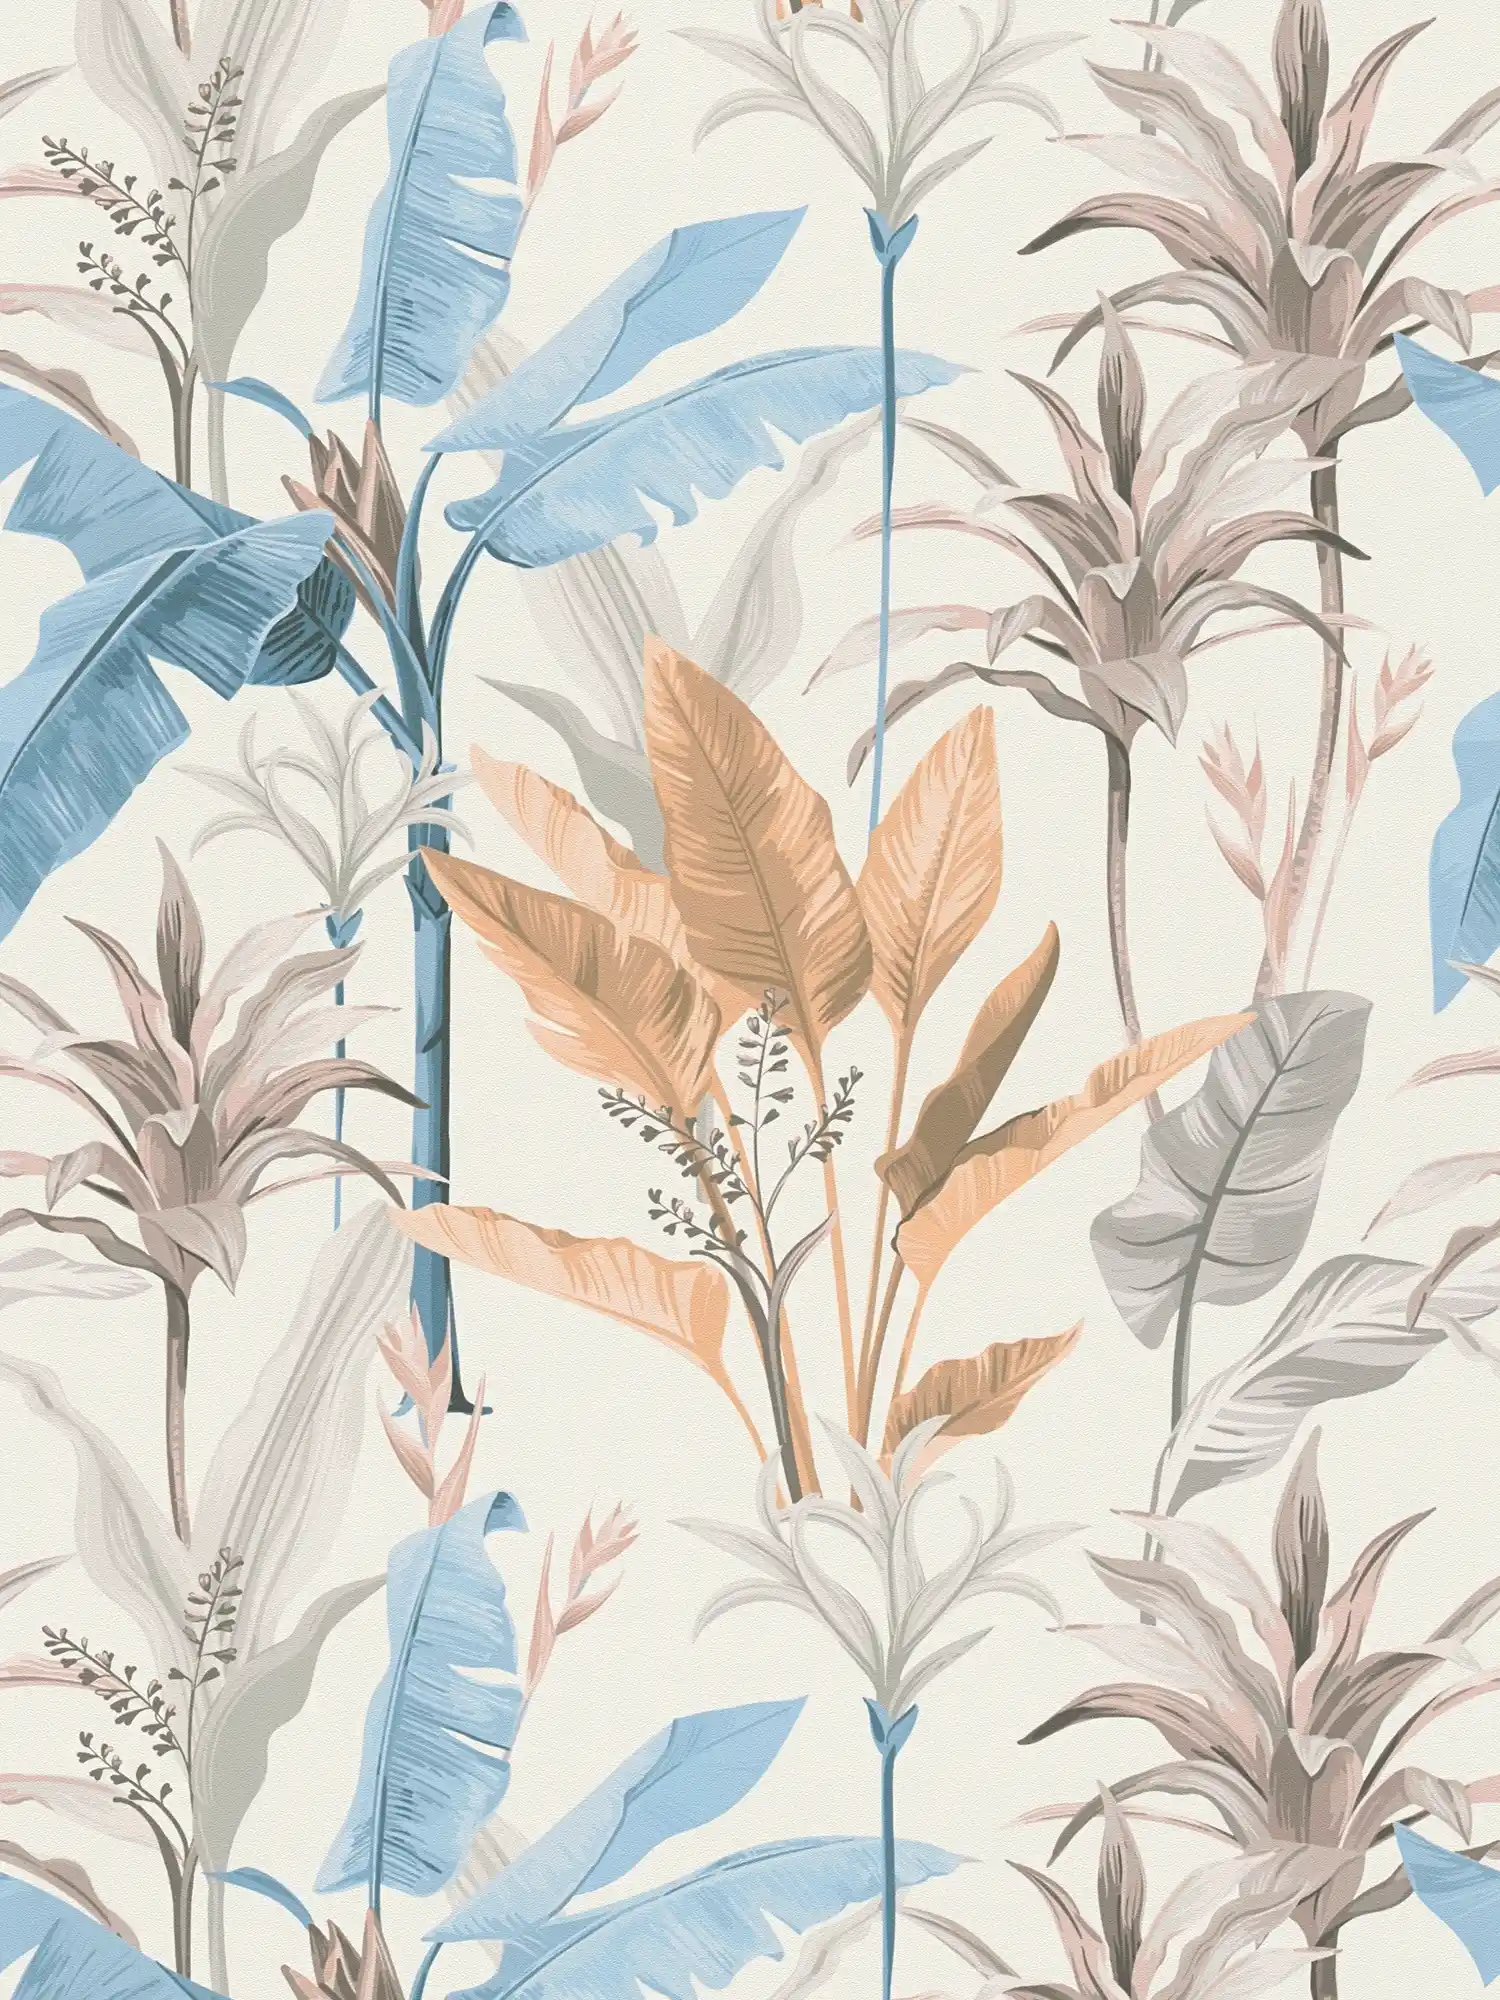         Detaillierte florale Vliestapete mit Blätter Muster - Blau, Grau, Creme
    